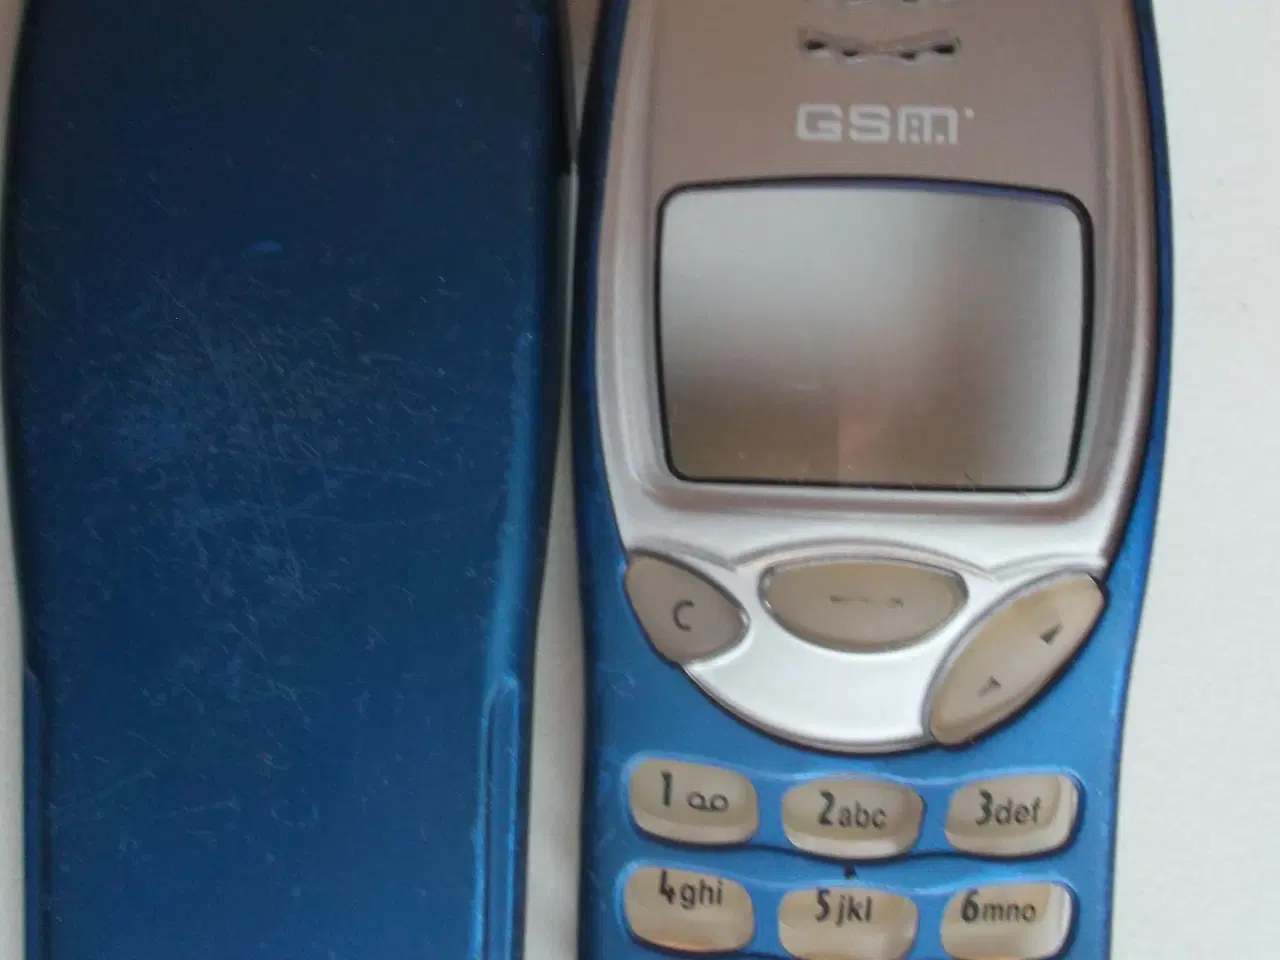 Billede 1 - Cover og tastatur til Nokia 3210 mobiltelefon